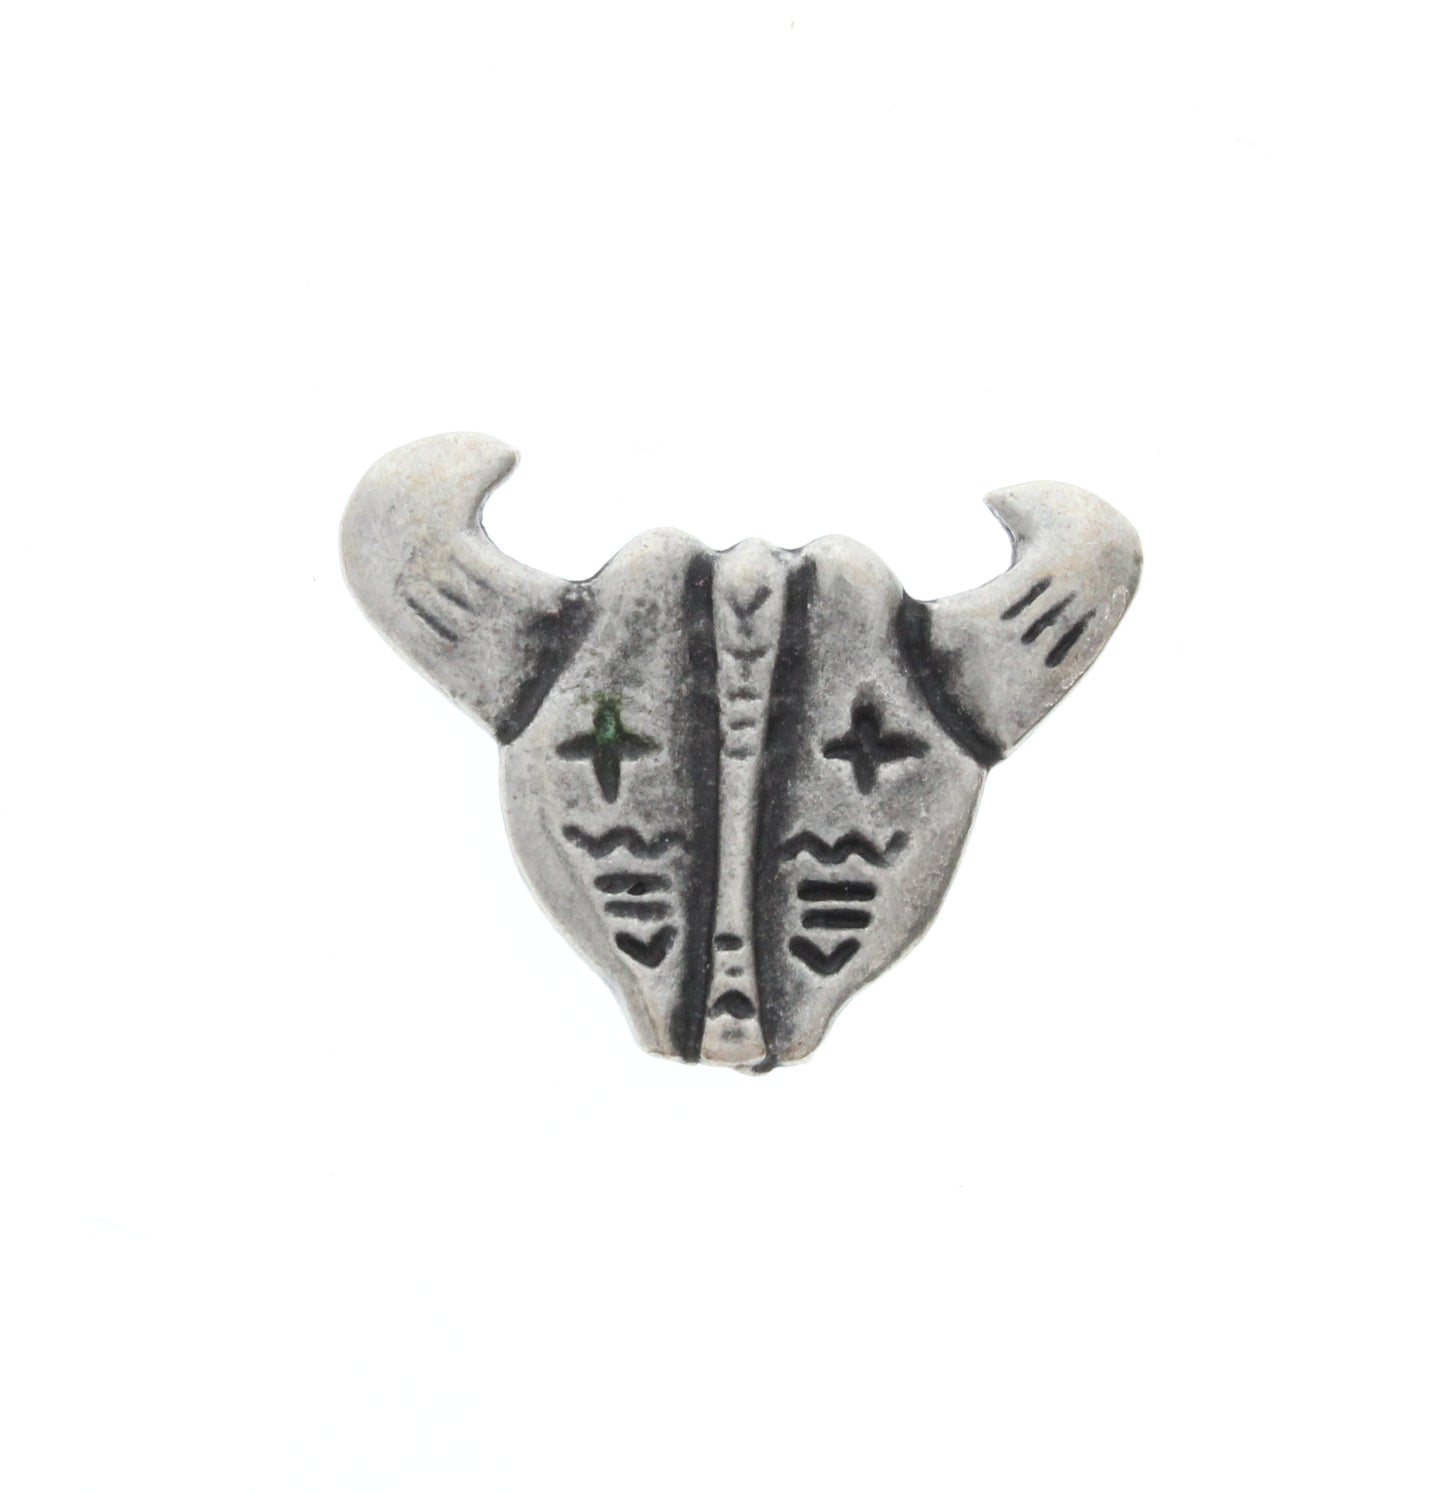 Antique Silver Steer Skull Charm, Pk/4